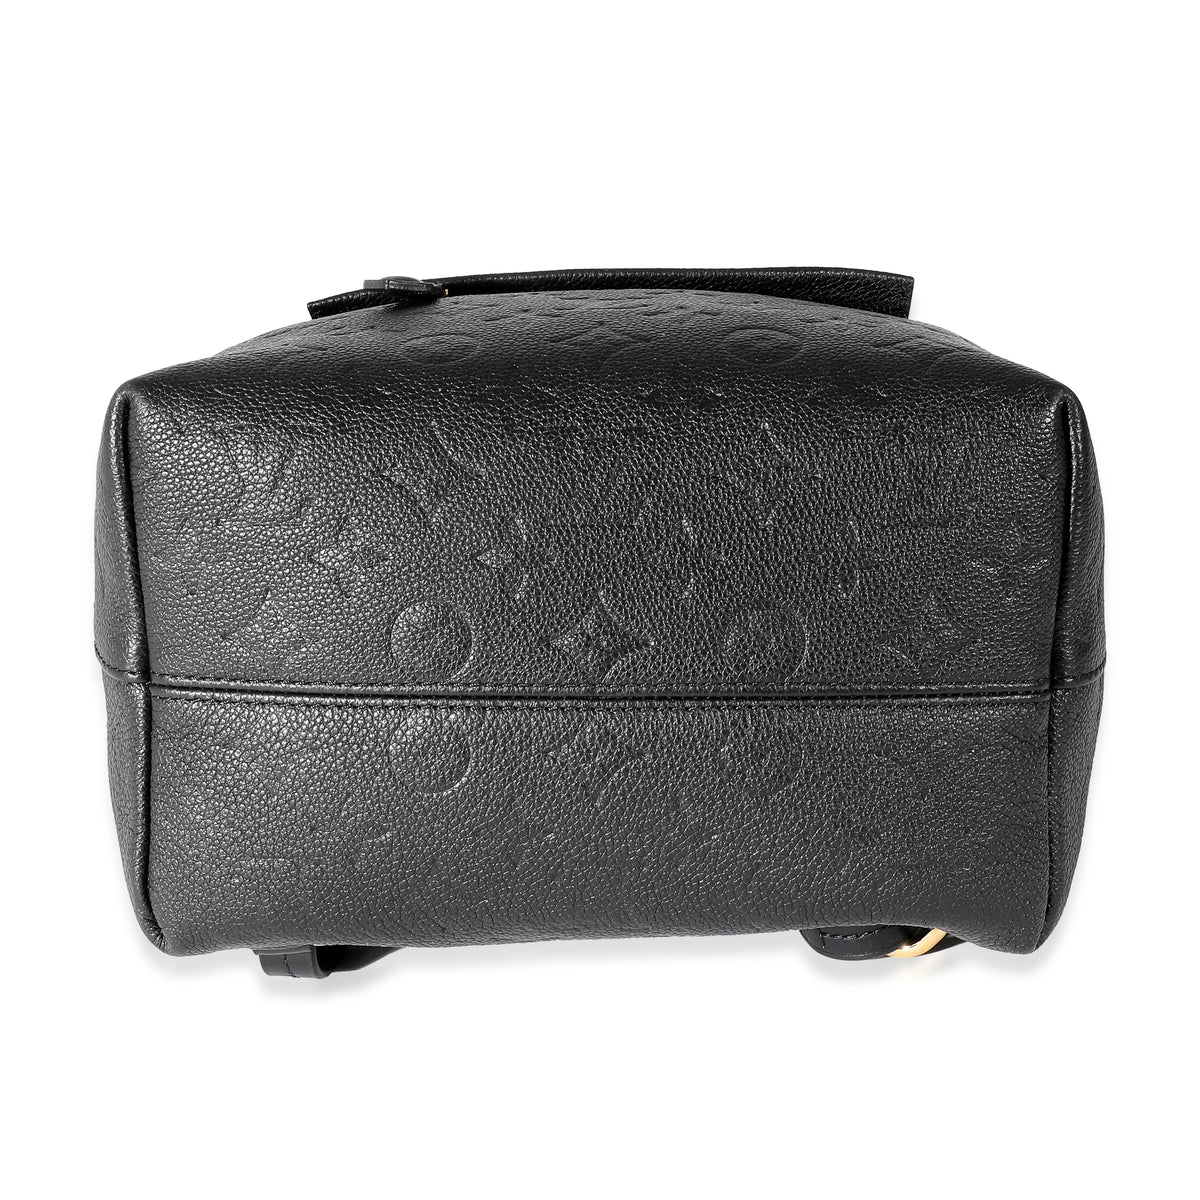 Louis Vuitton Black Empreinte Montsouris Backpack